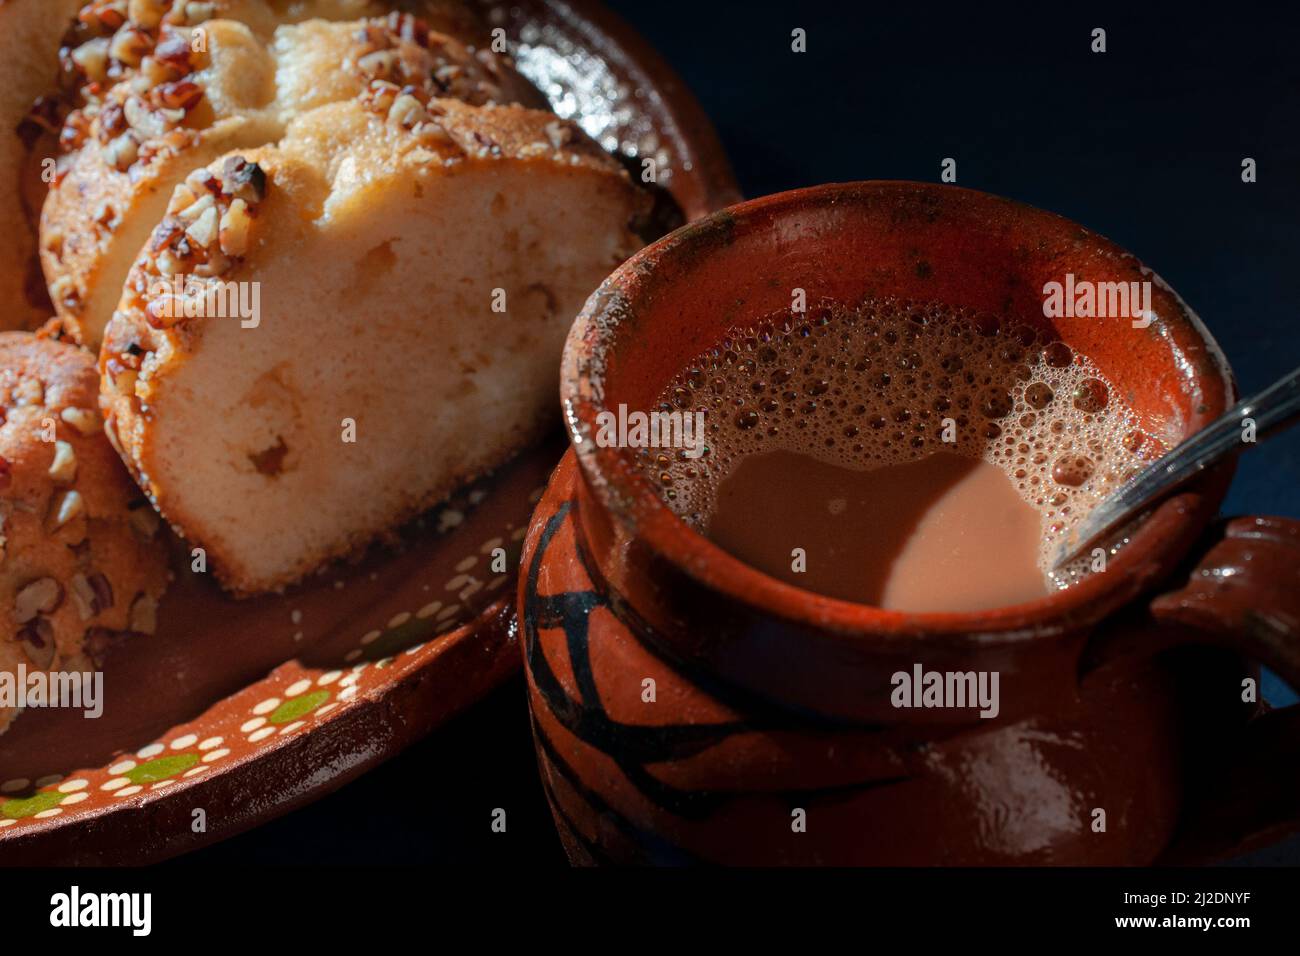 Süße Brotscheiben mit Walnussstücken darauf, auf einem mexikanischen Teller mit Schlamm oder Lehm und einer heißen Tasse Kaffee oder Schokolade auf der Seite Stockfoto